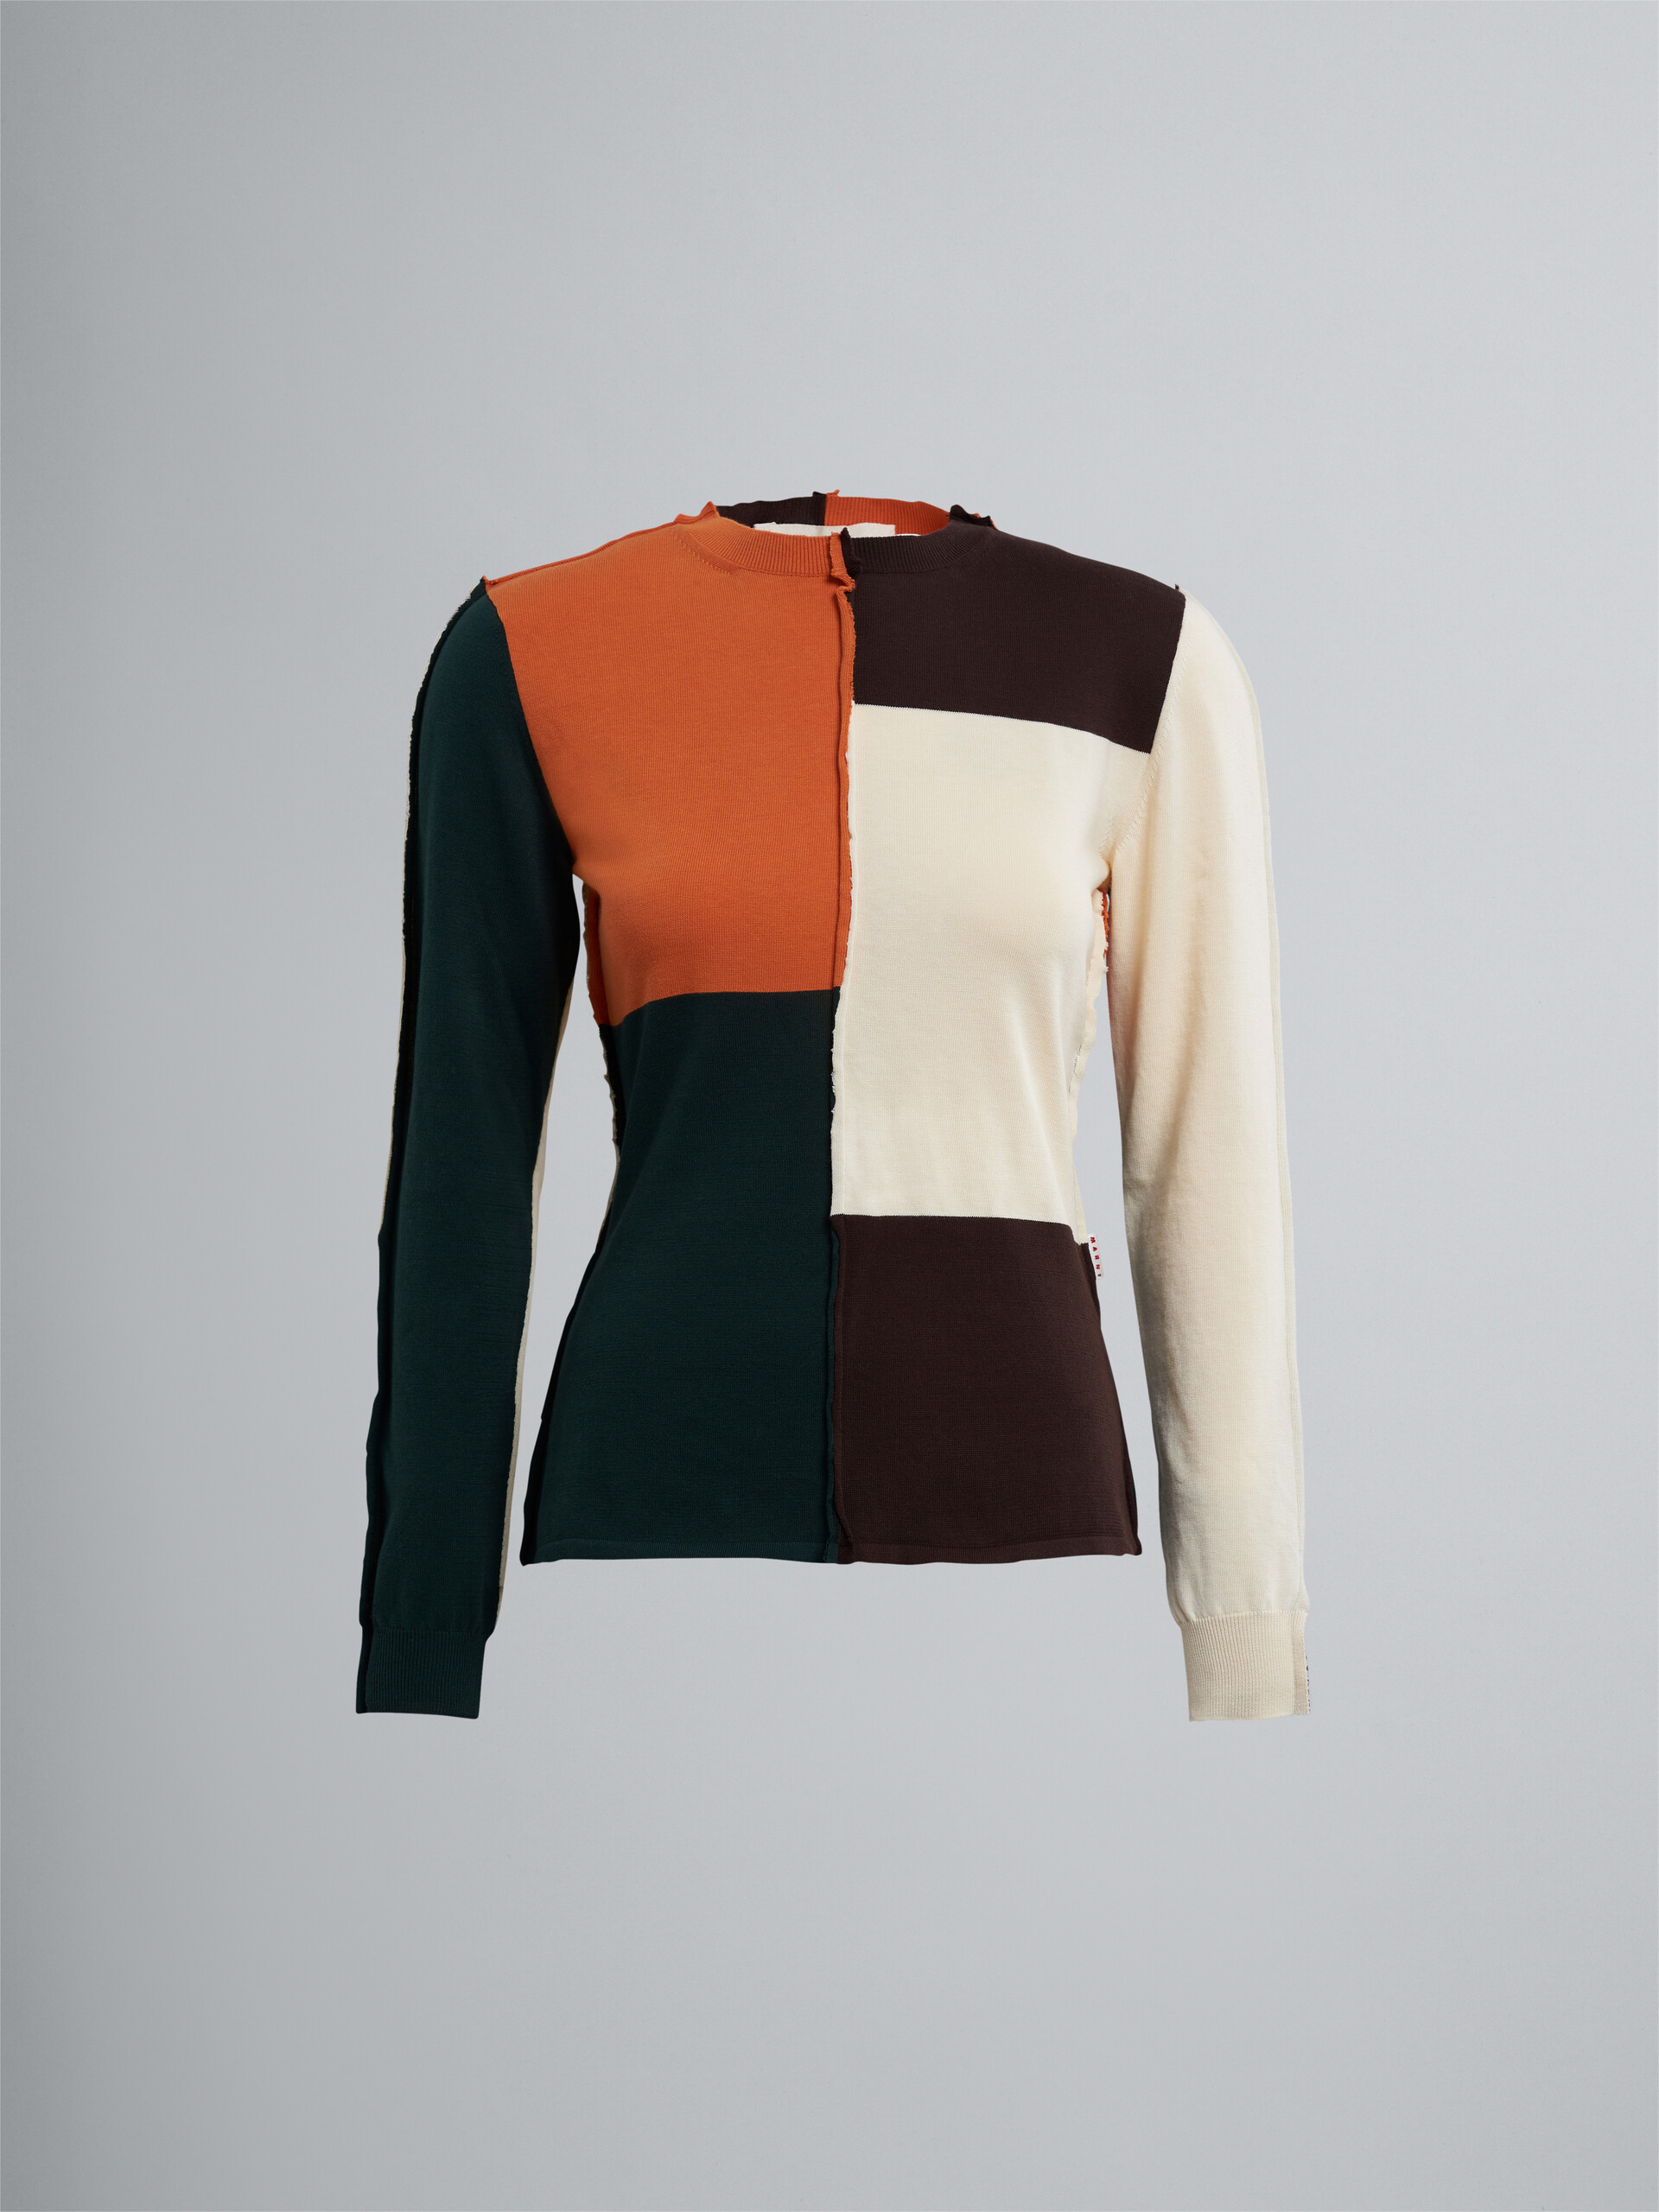 Colourblock bio cotton sweater - Pullovers - Image 1